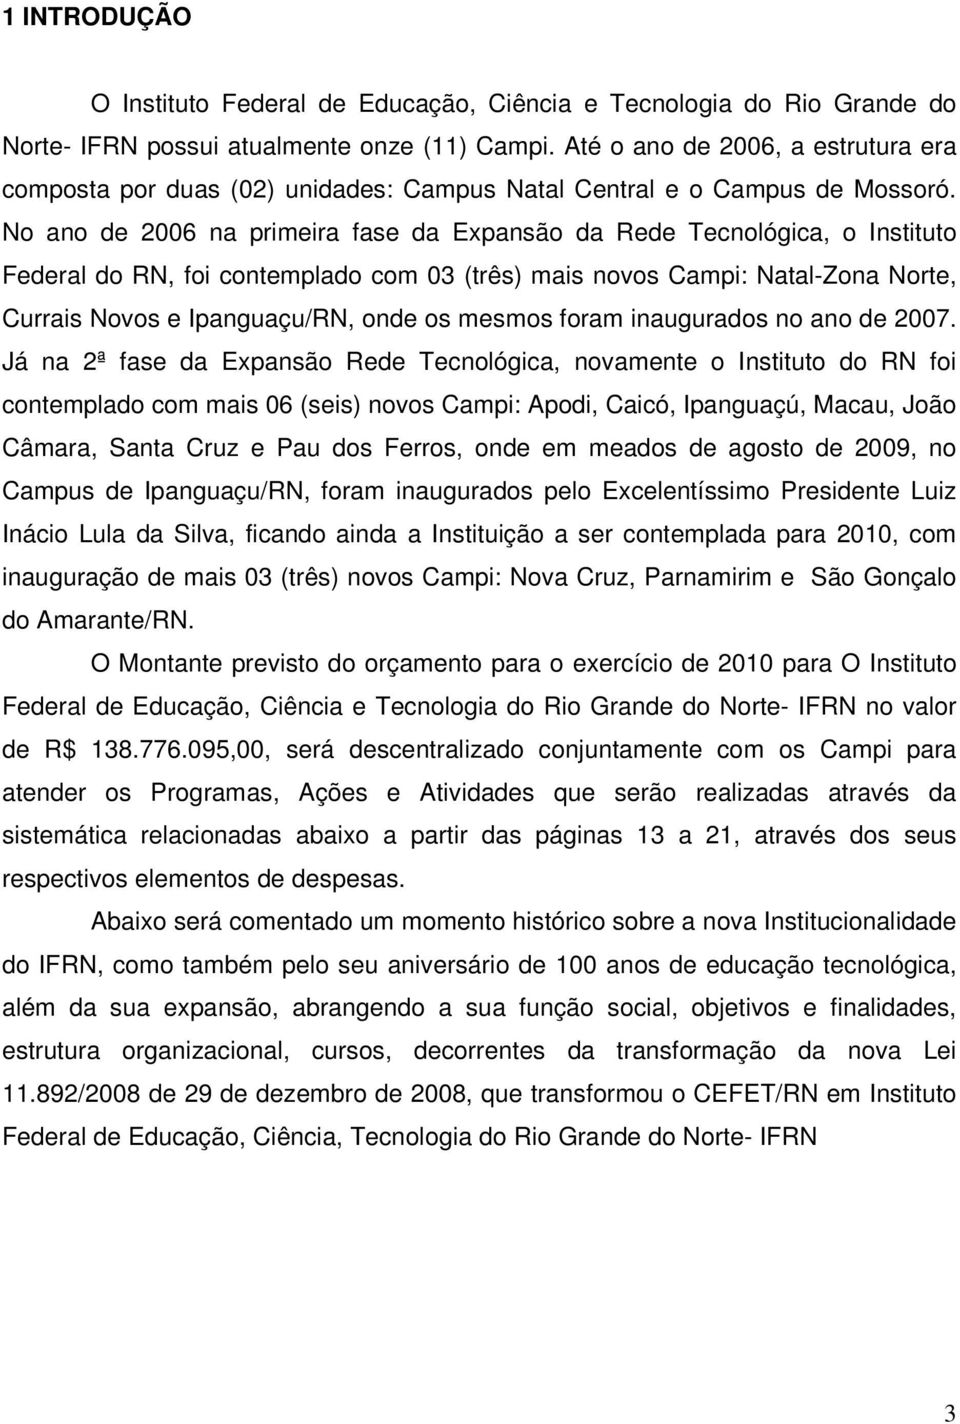 No ano de 2006 na primeira fase da Expansão da Rede Tecnológica, o Instituto Federal do RN, foi contemplado com 03 (três) mais novos Campi: Natal-Zona Norte, Currais Novos e Ipanguaçu/RN, onde os